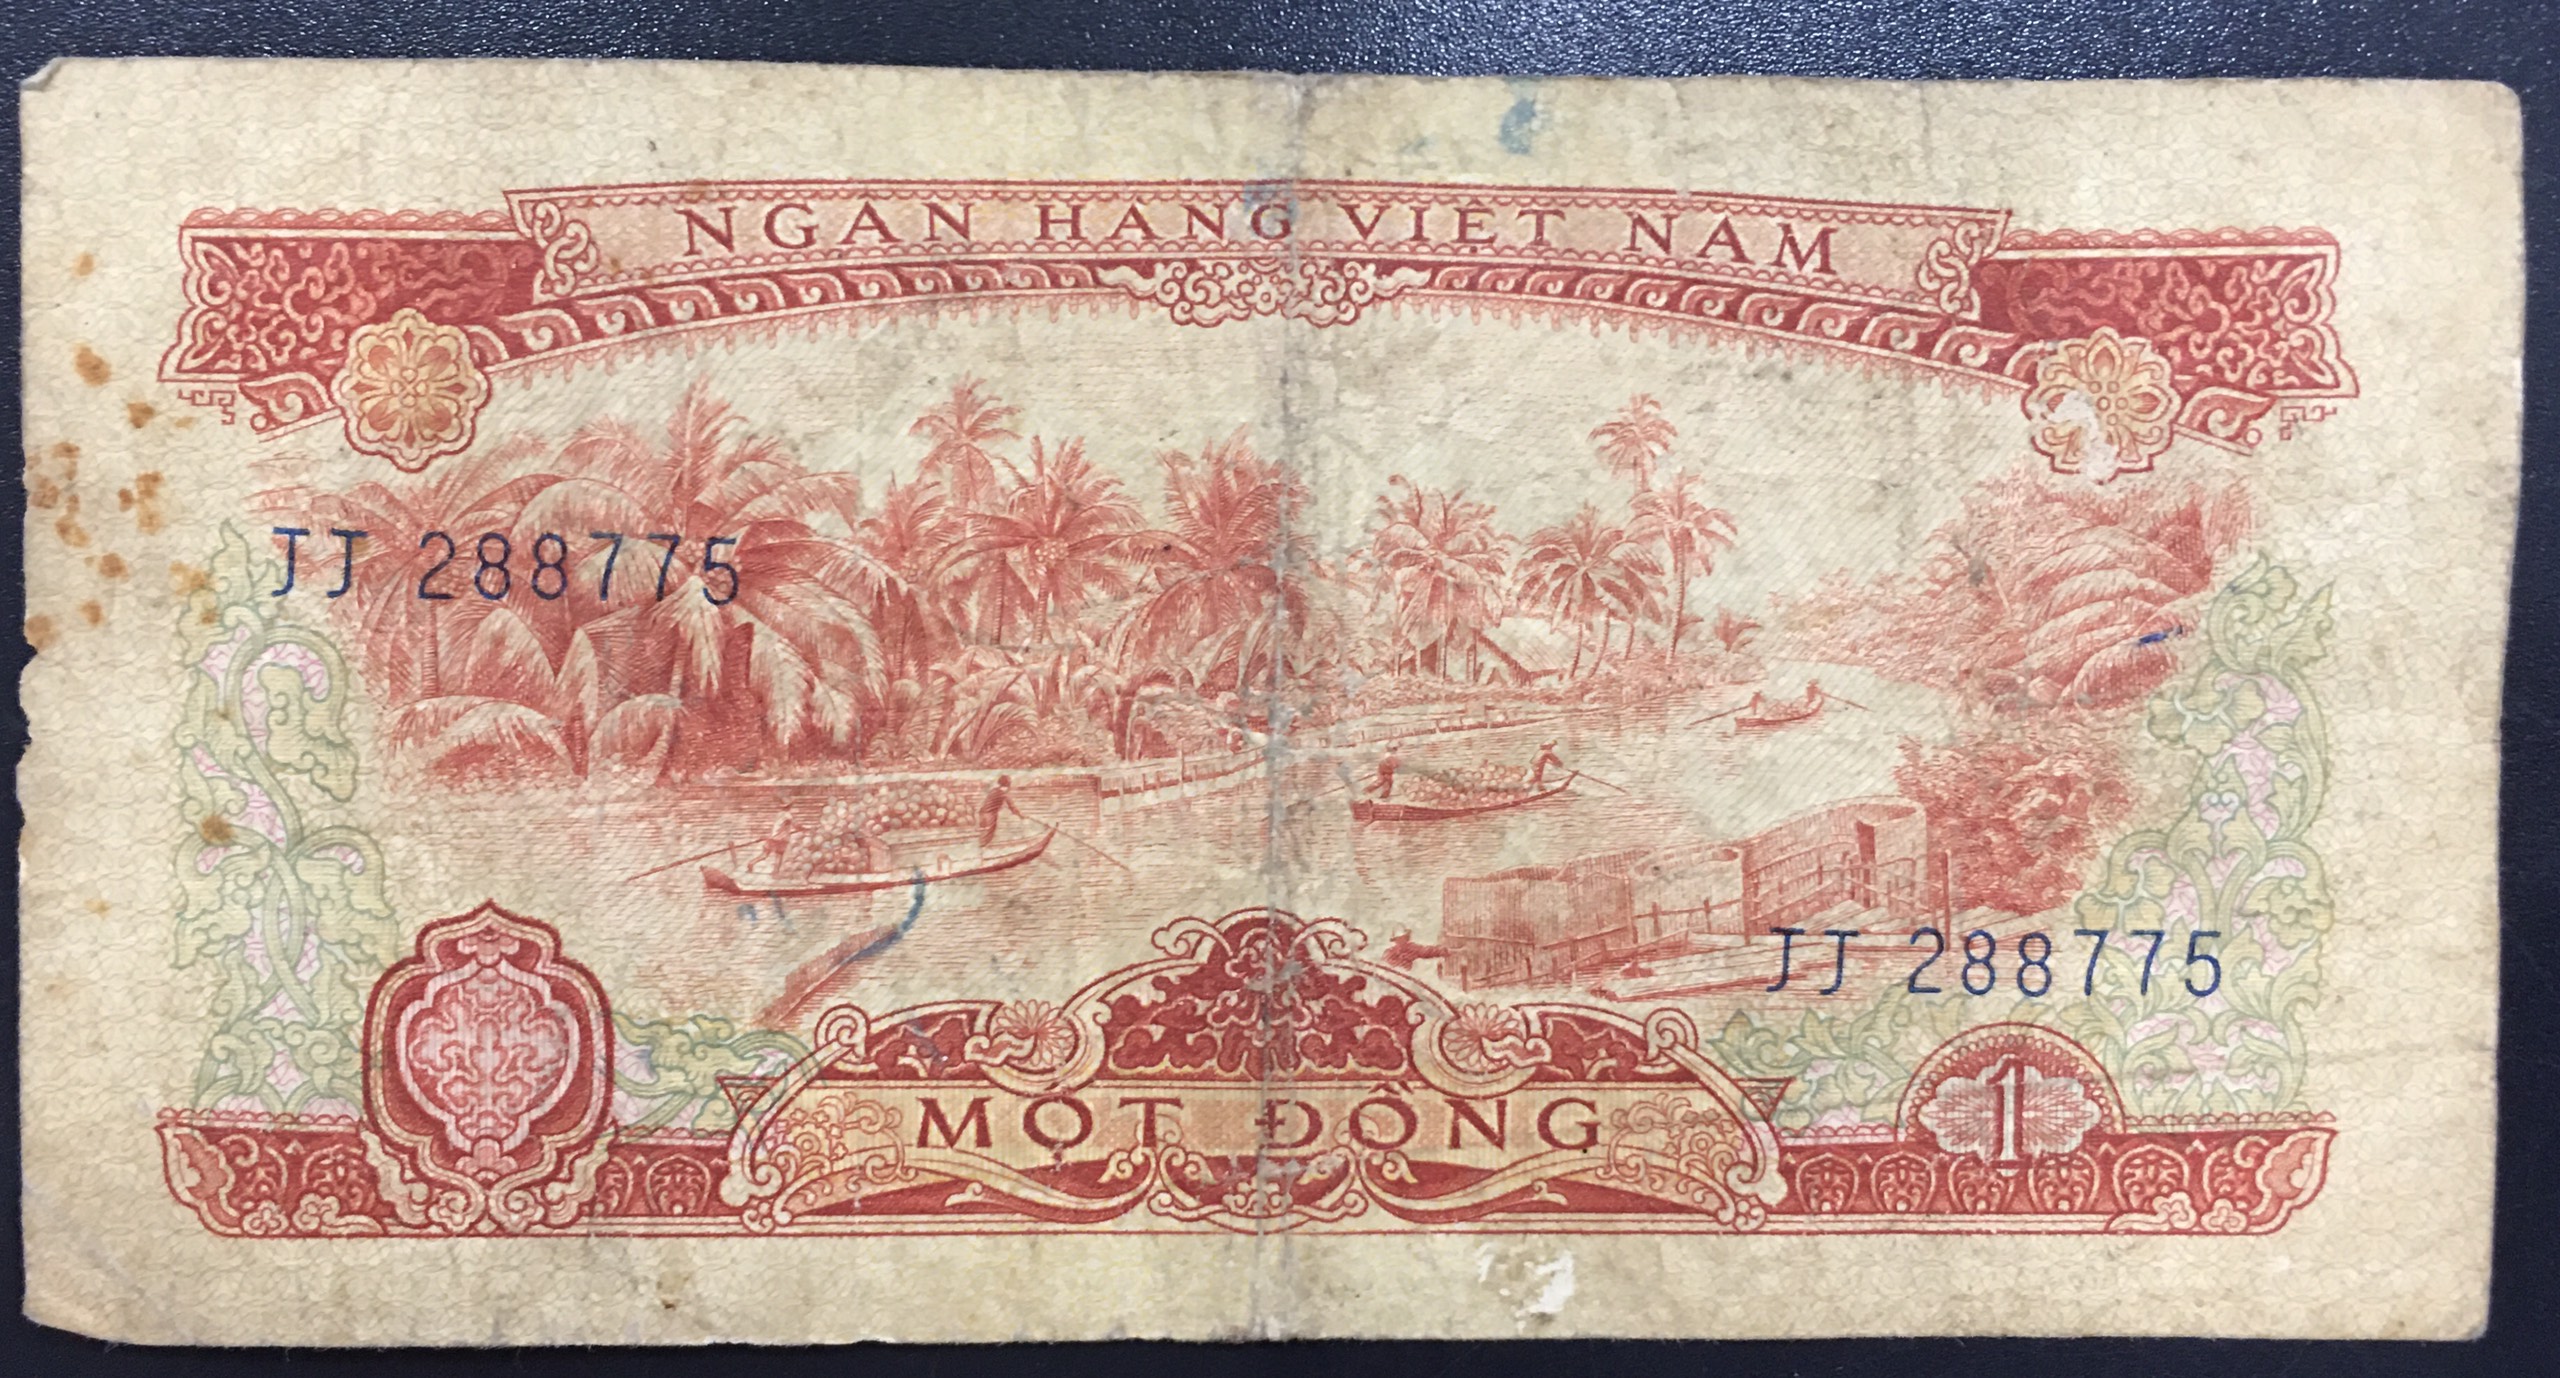 Tiền Cổ Sưu Tầm Tờ 1 đồng giải phóng miền Nam 1966, ghe chở dừa miền Nam, gặt lúa Miền Bắc